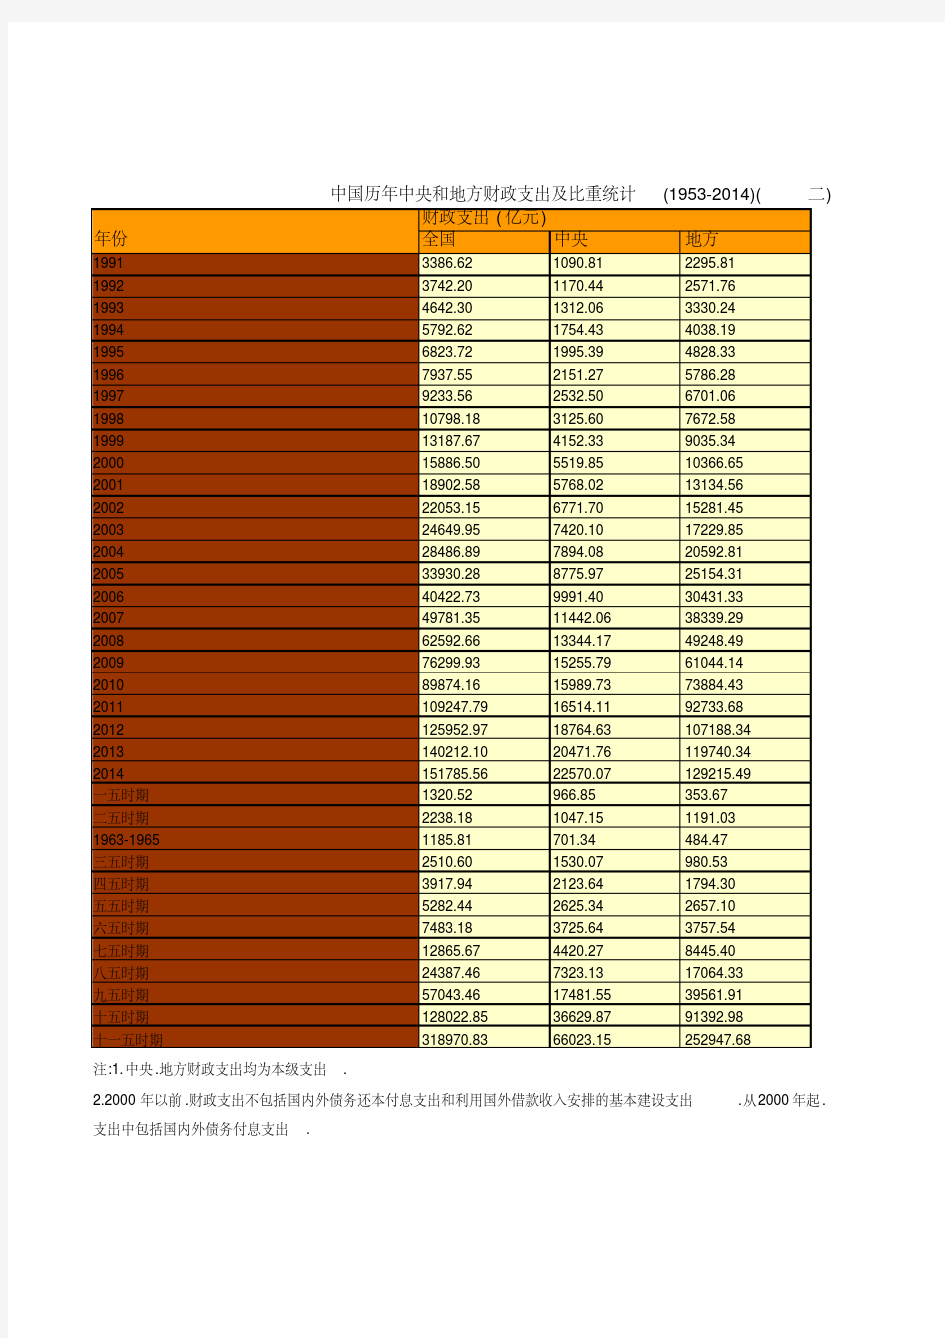 中国历年中央和地方财政支出及比重统计(1953-2014)(二)